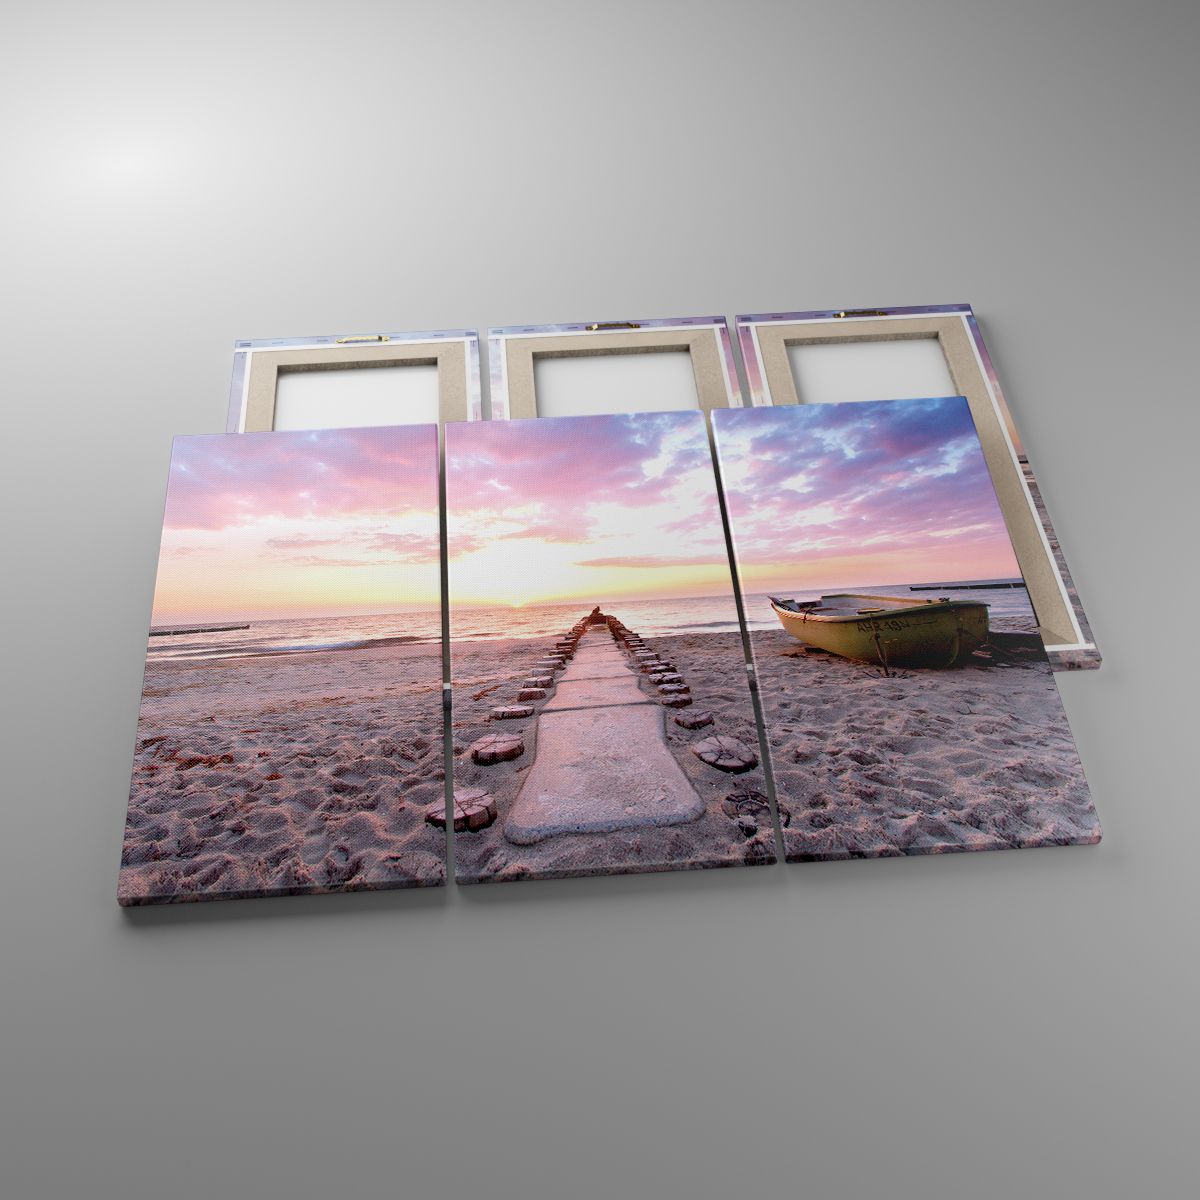 Leinwandbild Landschaft, Leinwandbild  Meer, Leinwandbild Strand, Leinwandbild Natur, Leinwandbild Der Sonnenuntergang